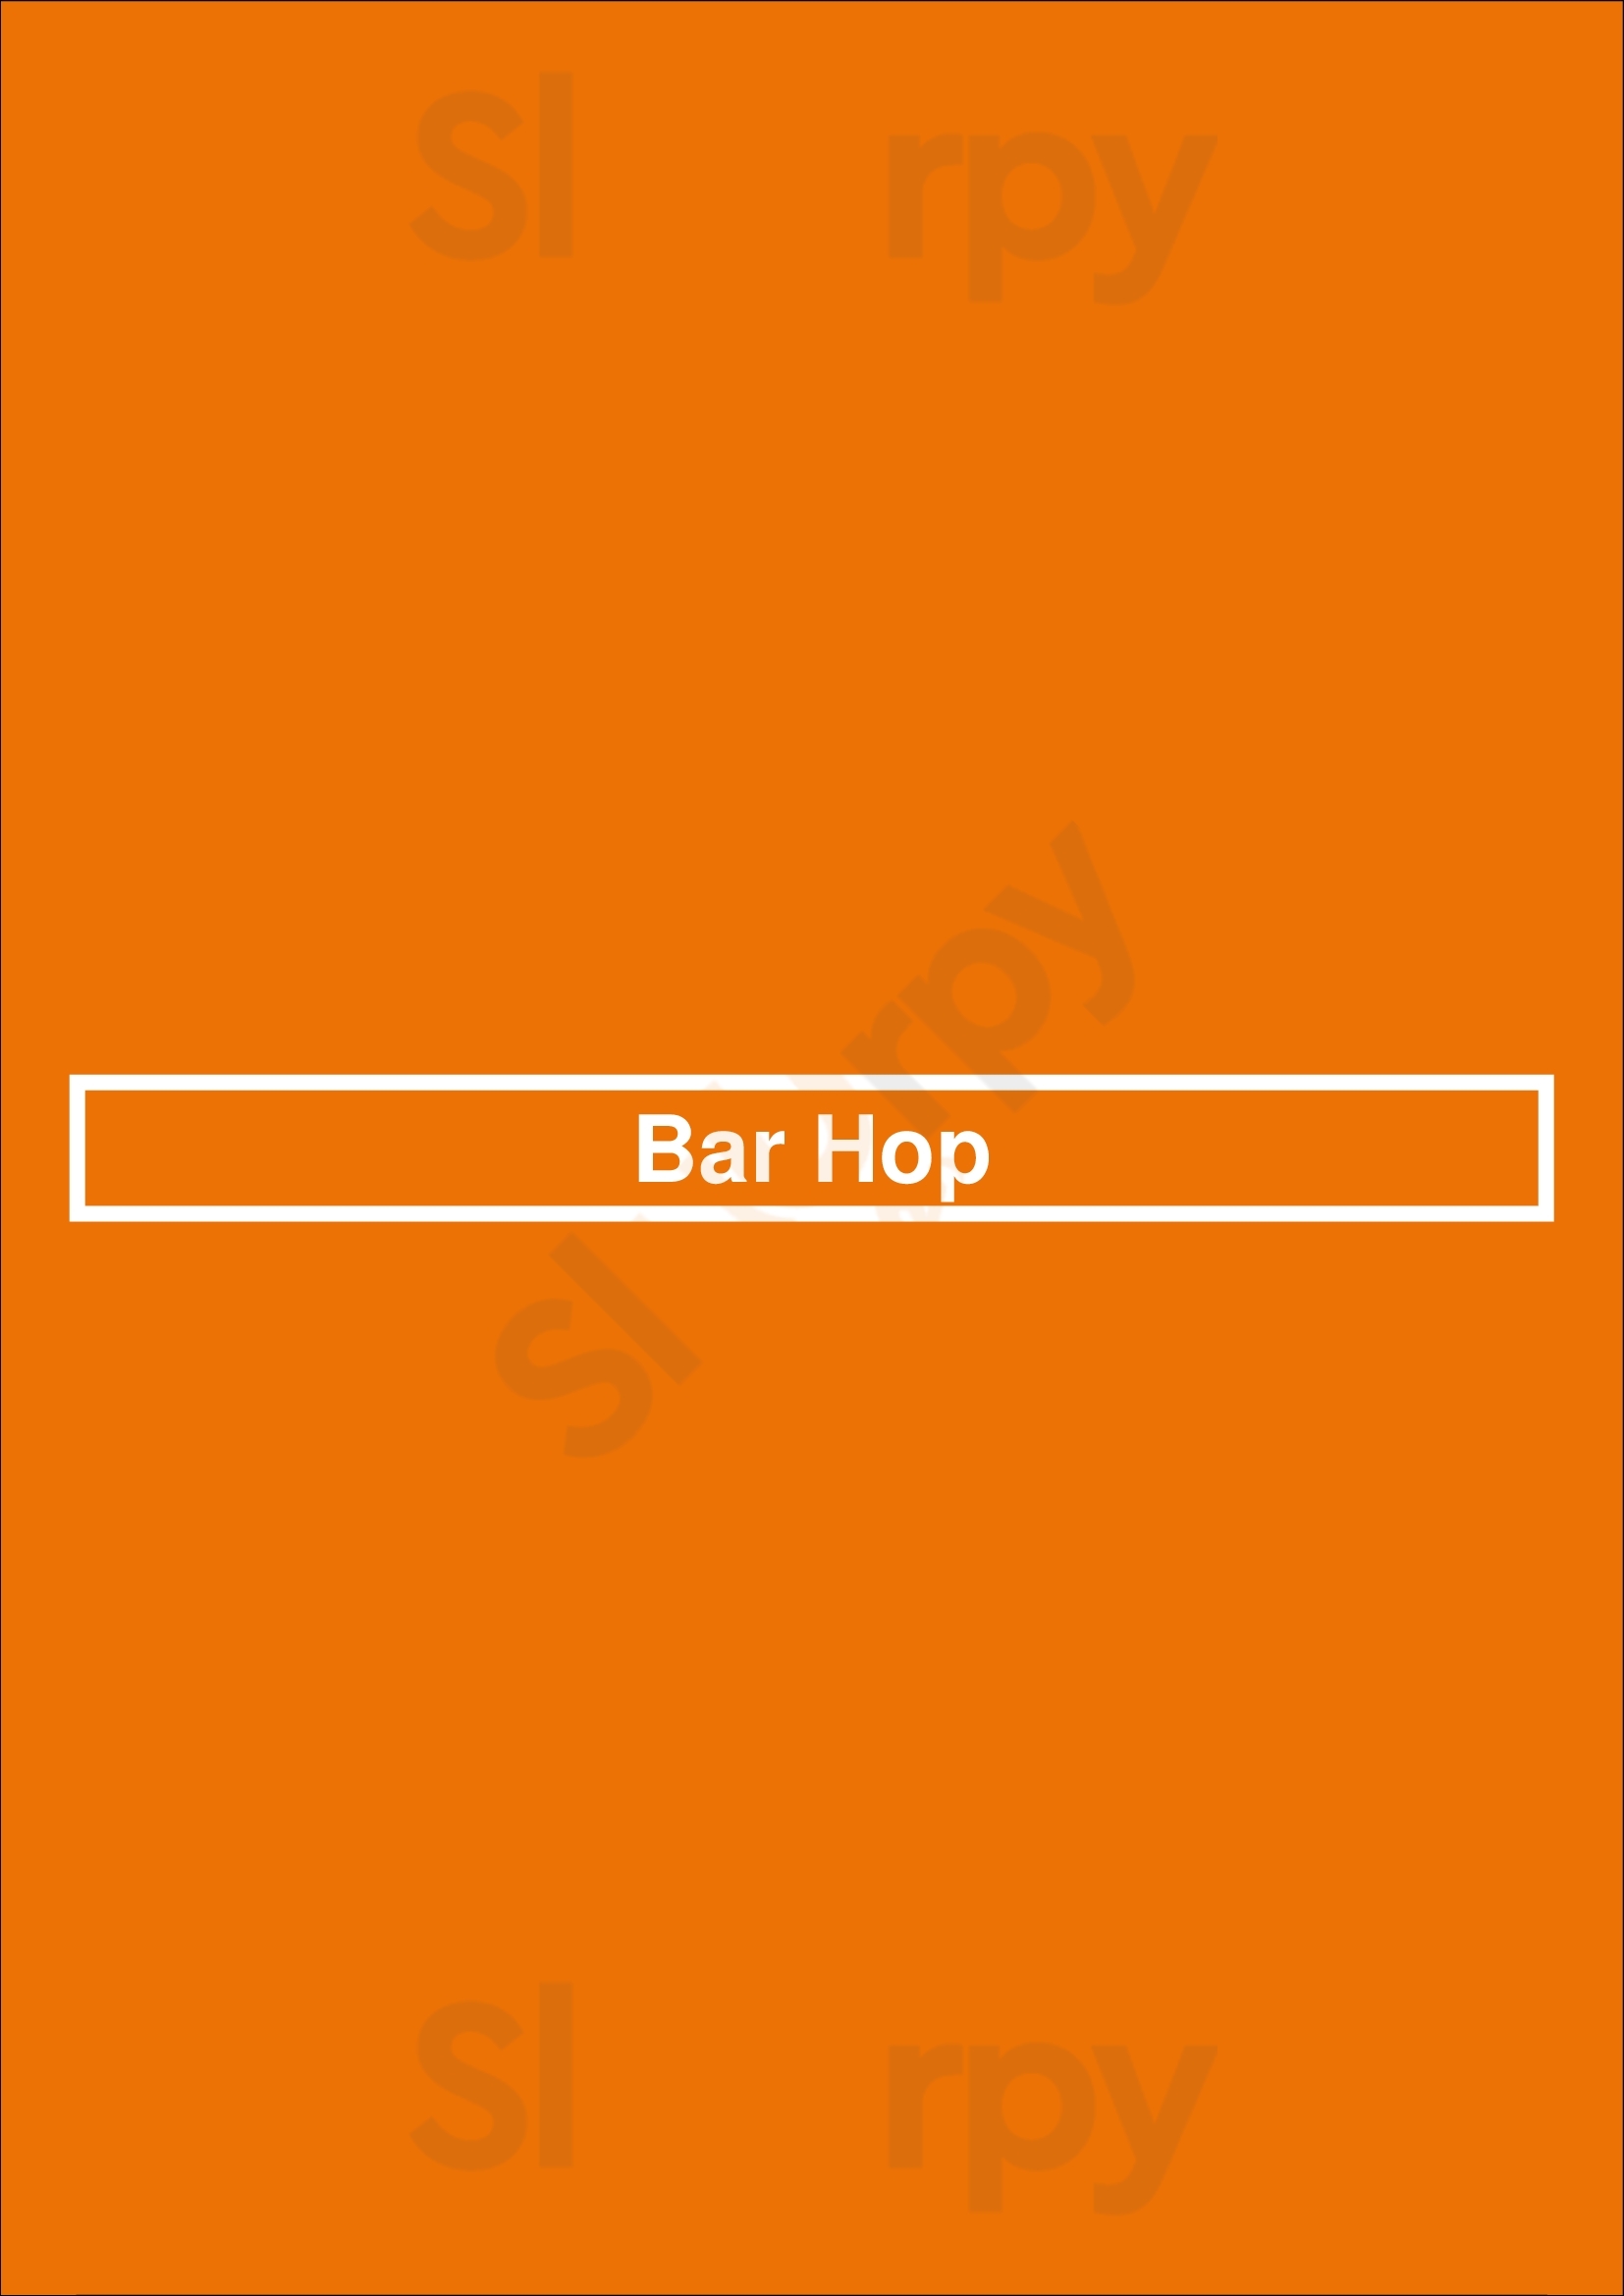 Bar Hop Toronto Menu - 1